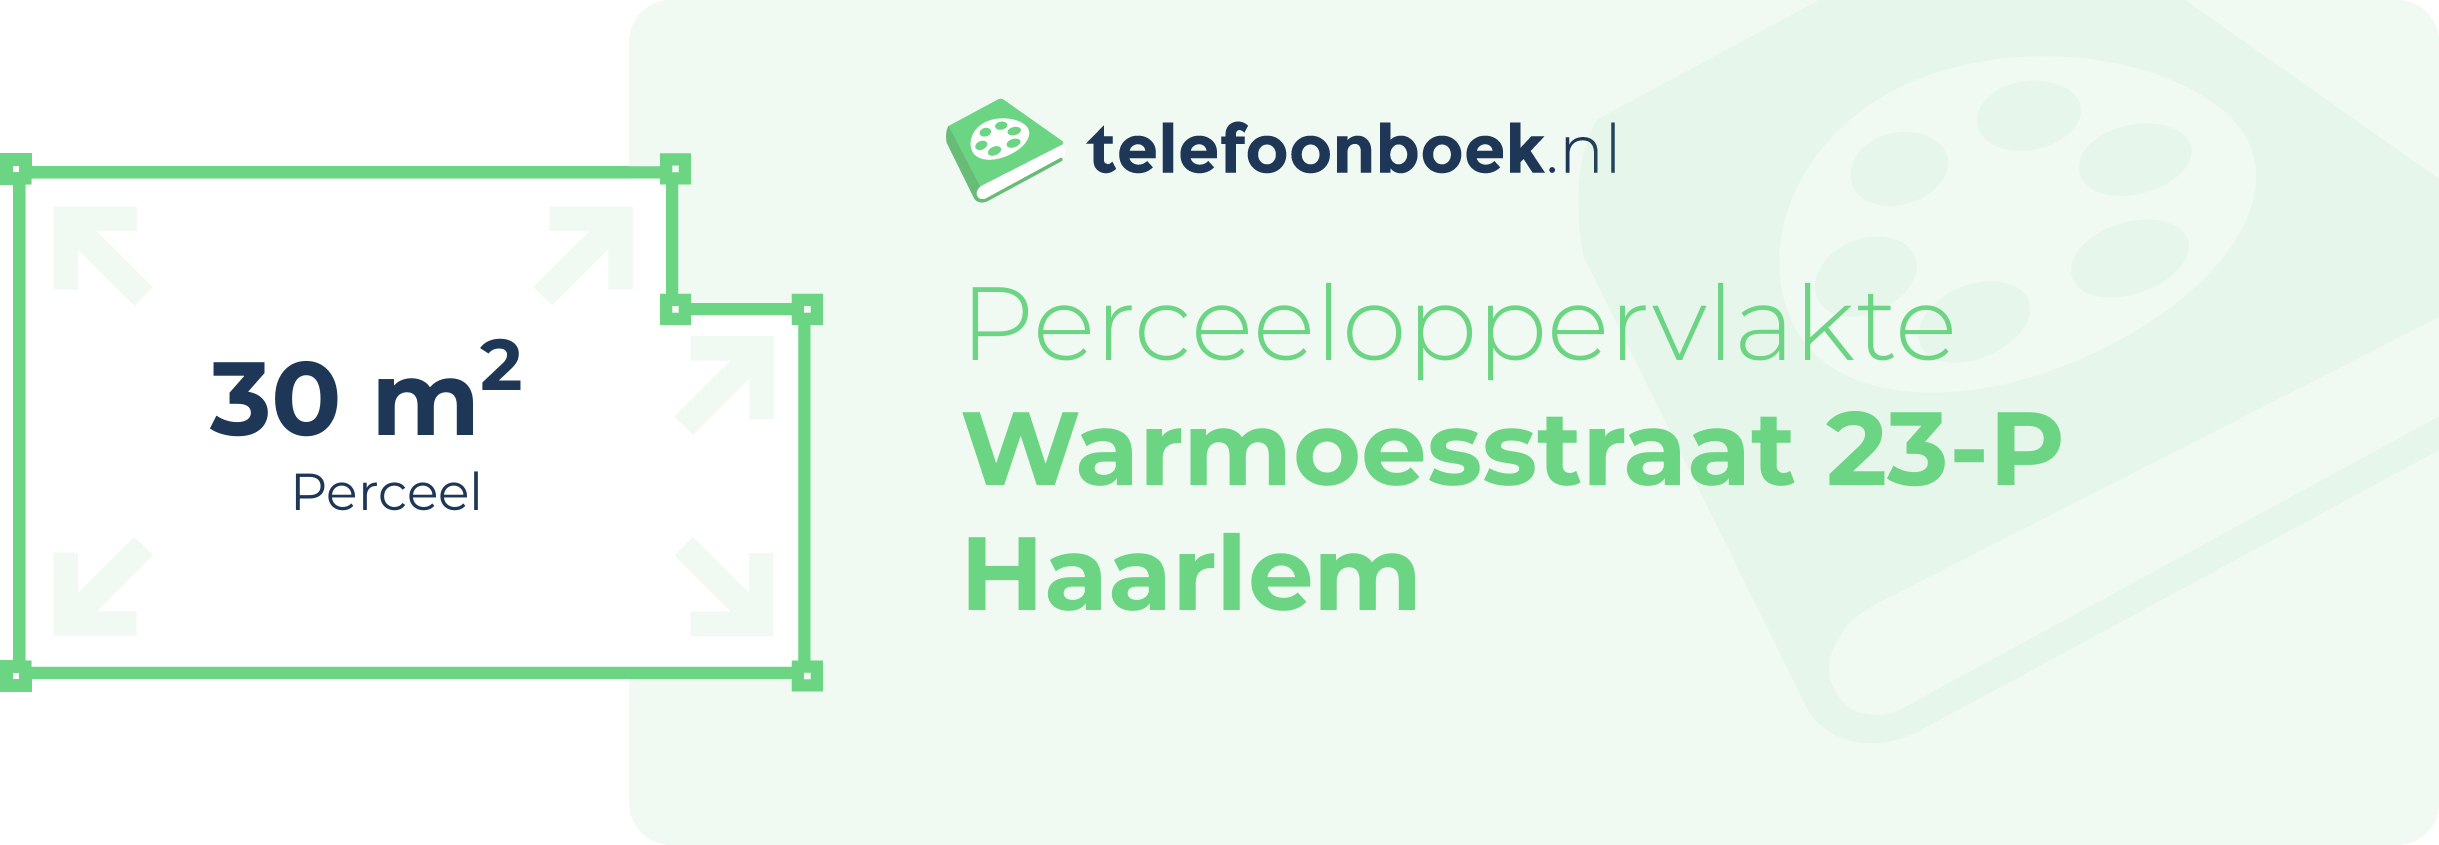 Perceeloppervlakte Warmoesstraat 23-P Haarlem